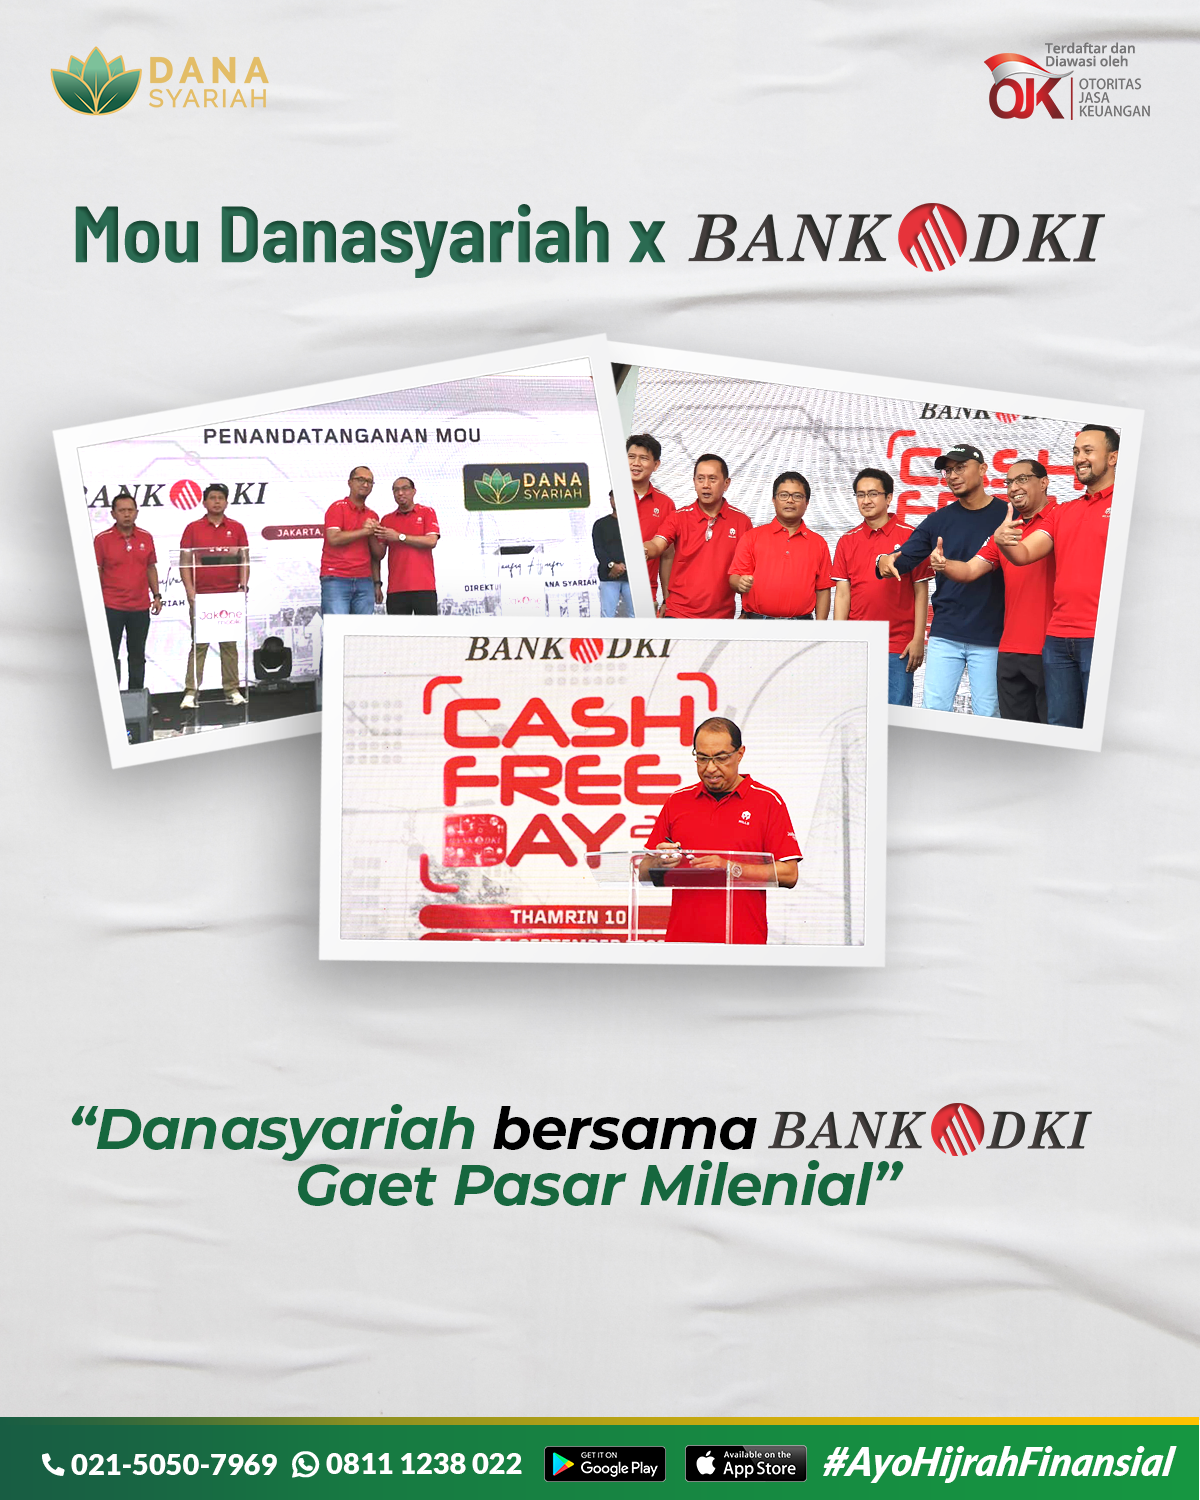 Dana Syariah Mou Danasyariah x Bank DKI “Danasyariah bersama Bank DKI Gaet Pasar Milenial”